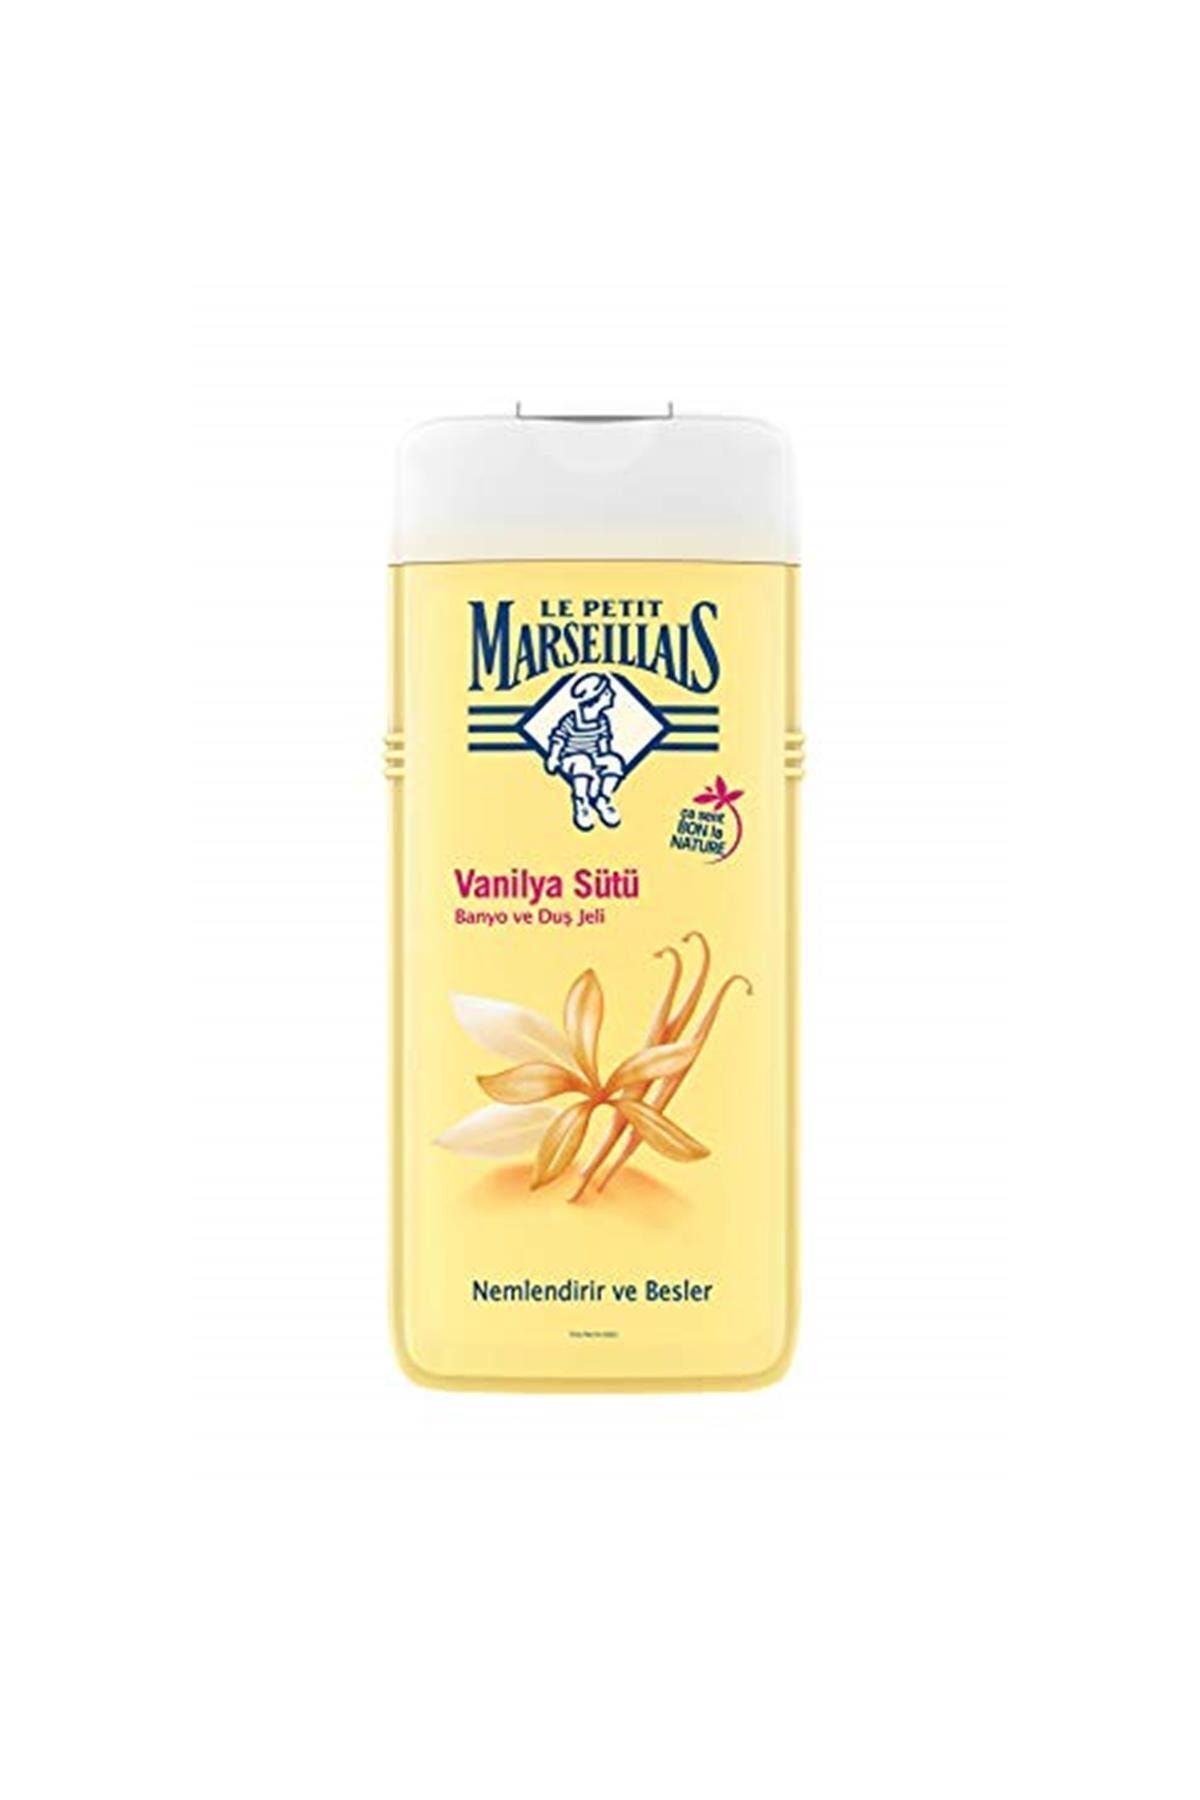 Le Petit Marseillais Marka: Lpm Vanilya Sütü Shower Gel, 400 Ml Kategori: Duş Jeli